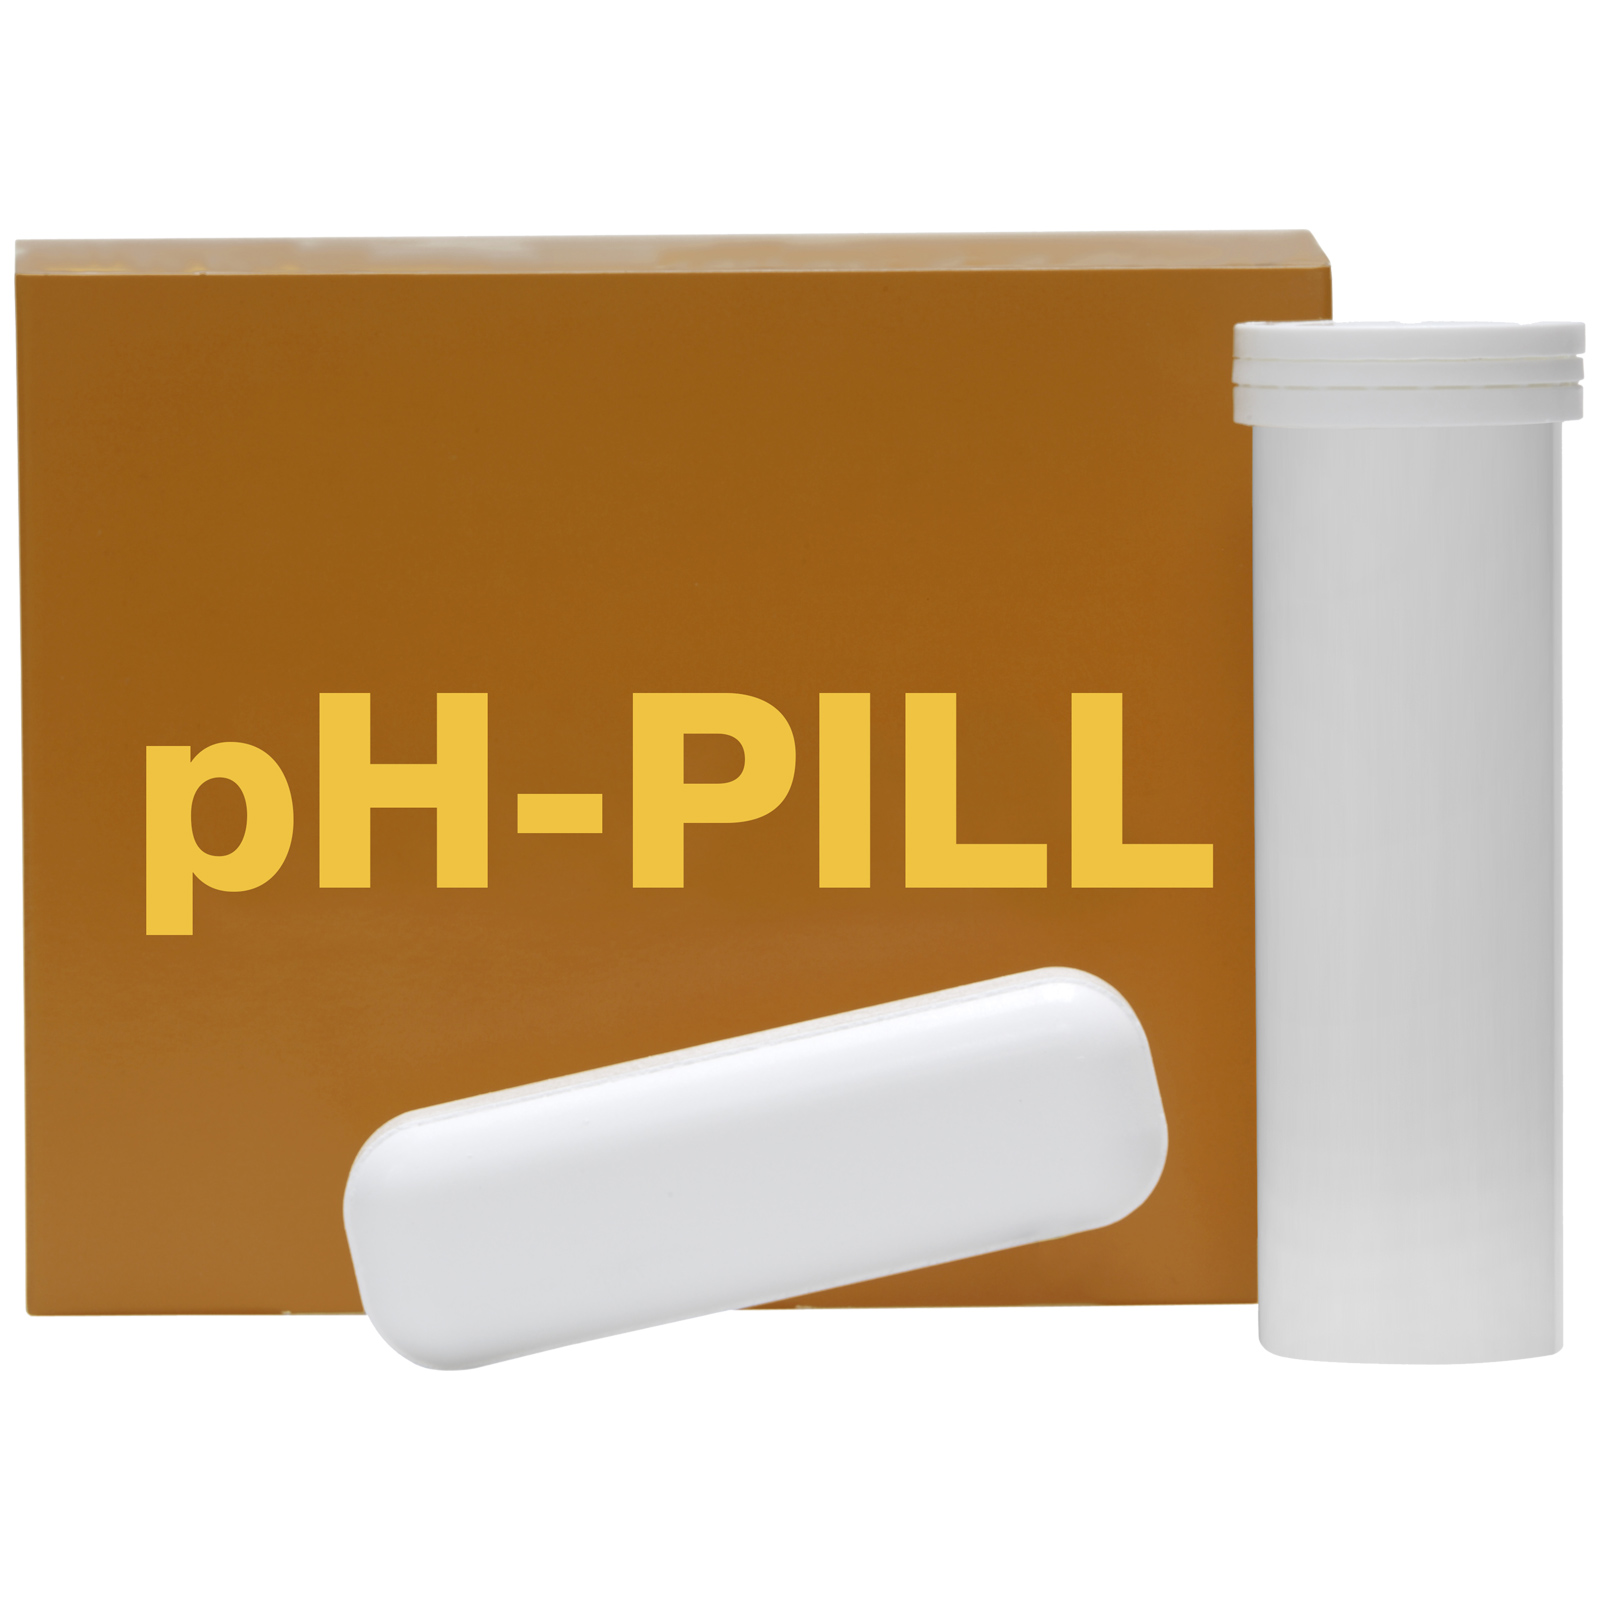 pH-PILL gegen Pansenübersäuerung 4 x 120 g